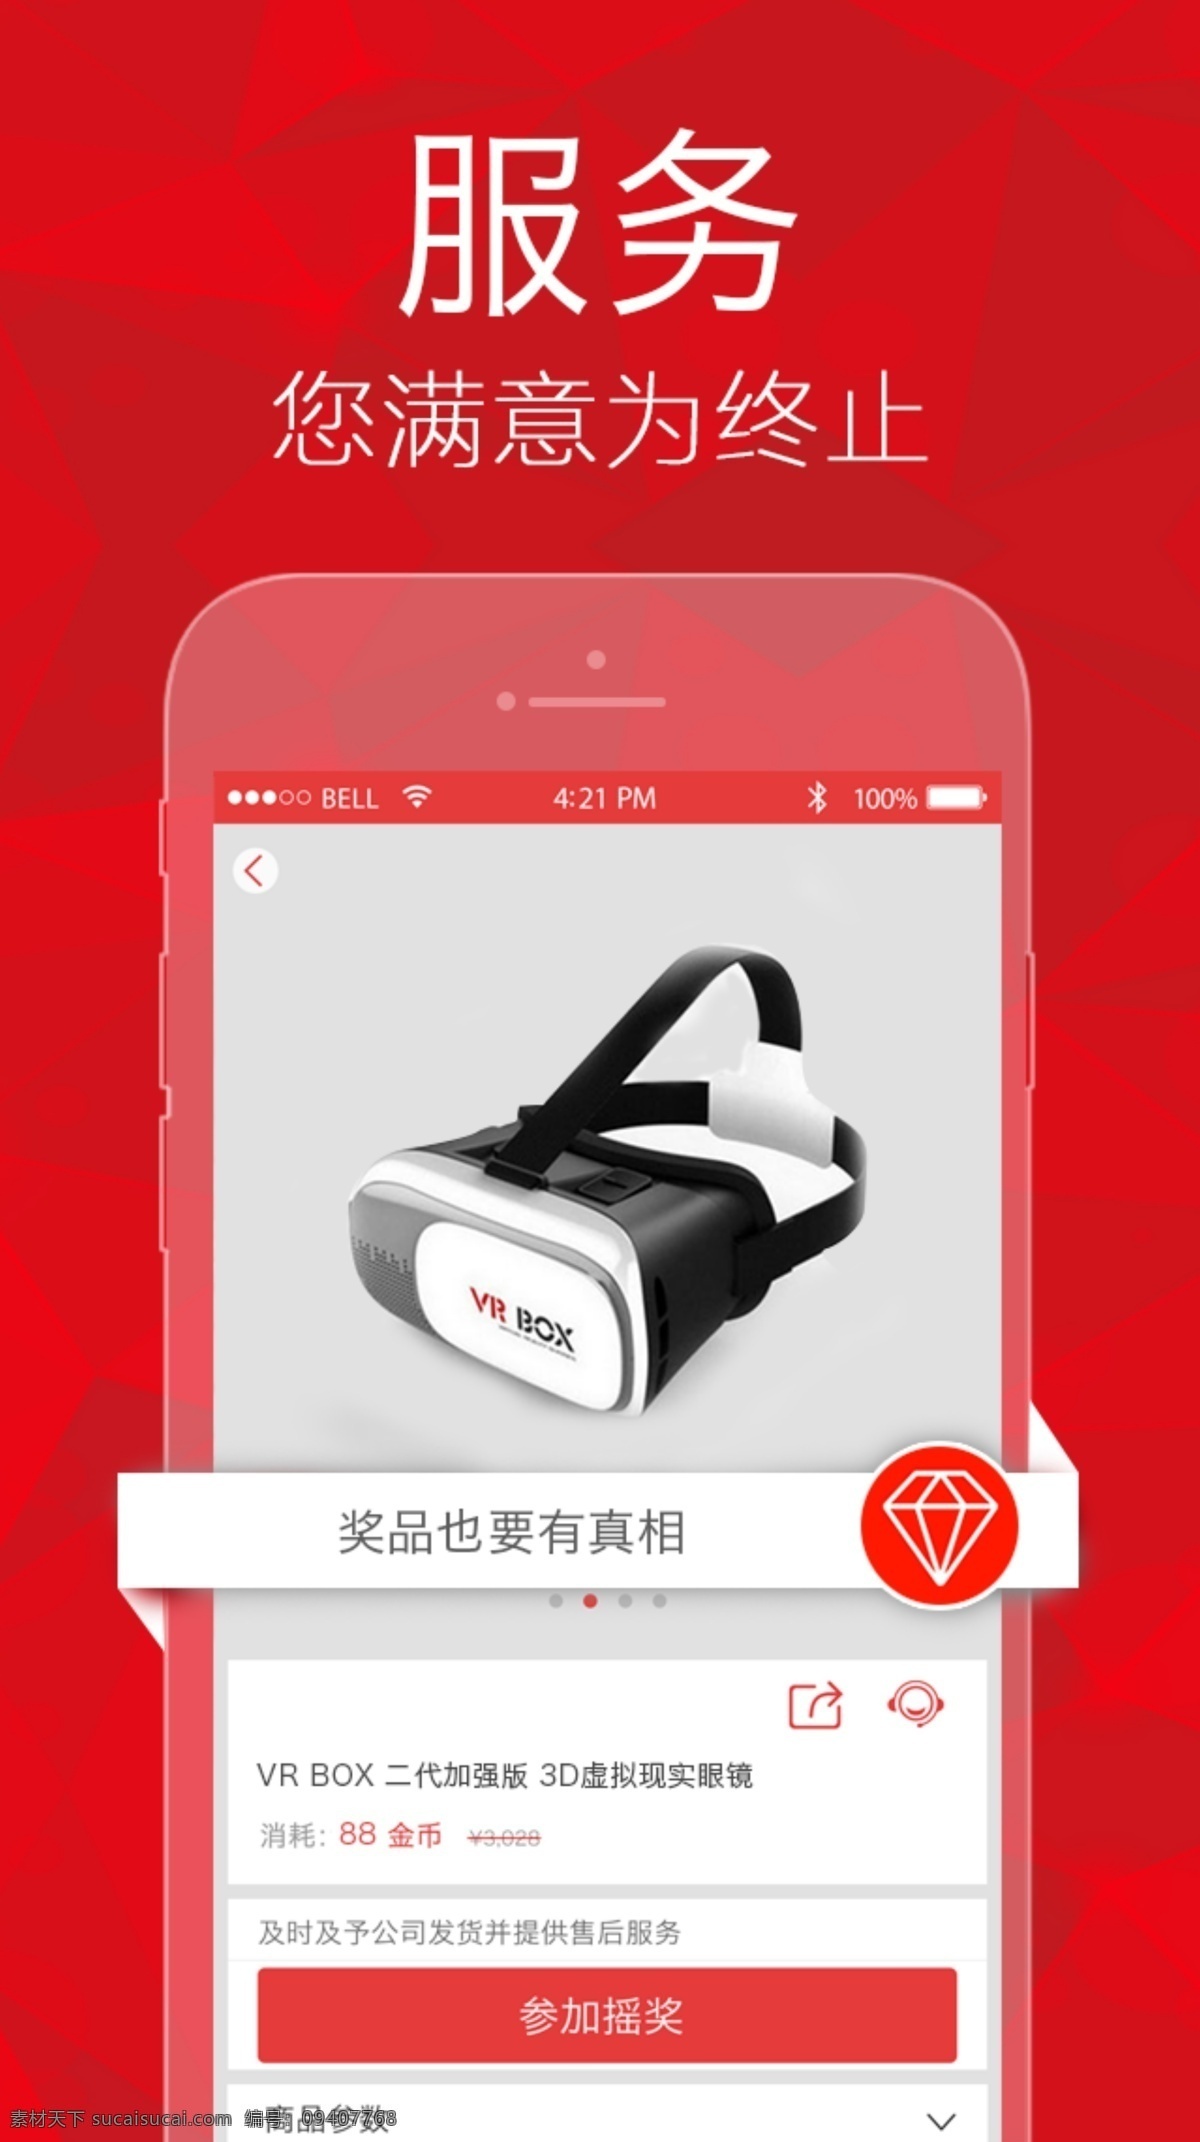 手机 appui 摇奖 引导 页面 app ui设计 红色 页面说明